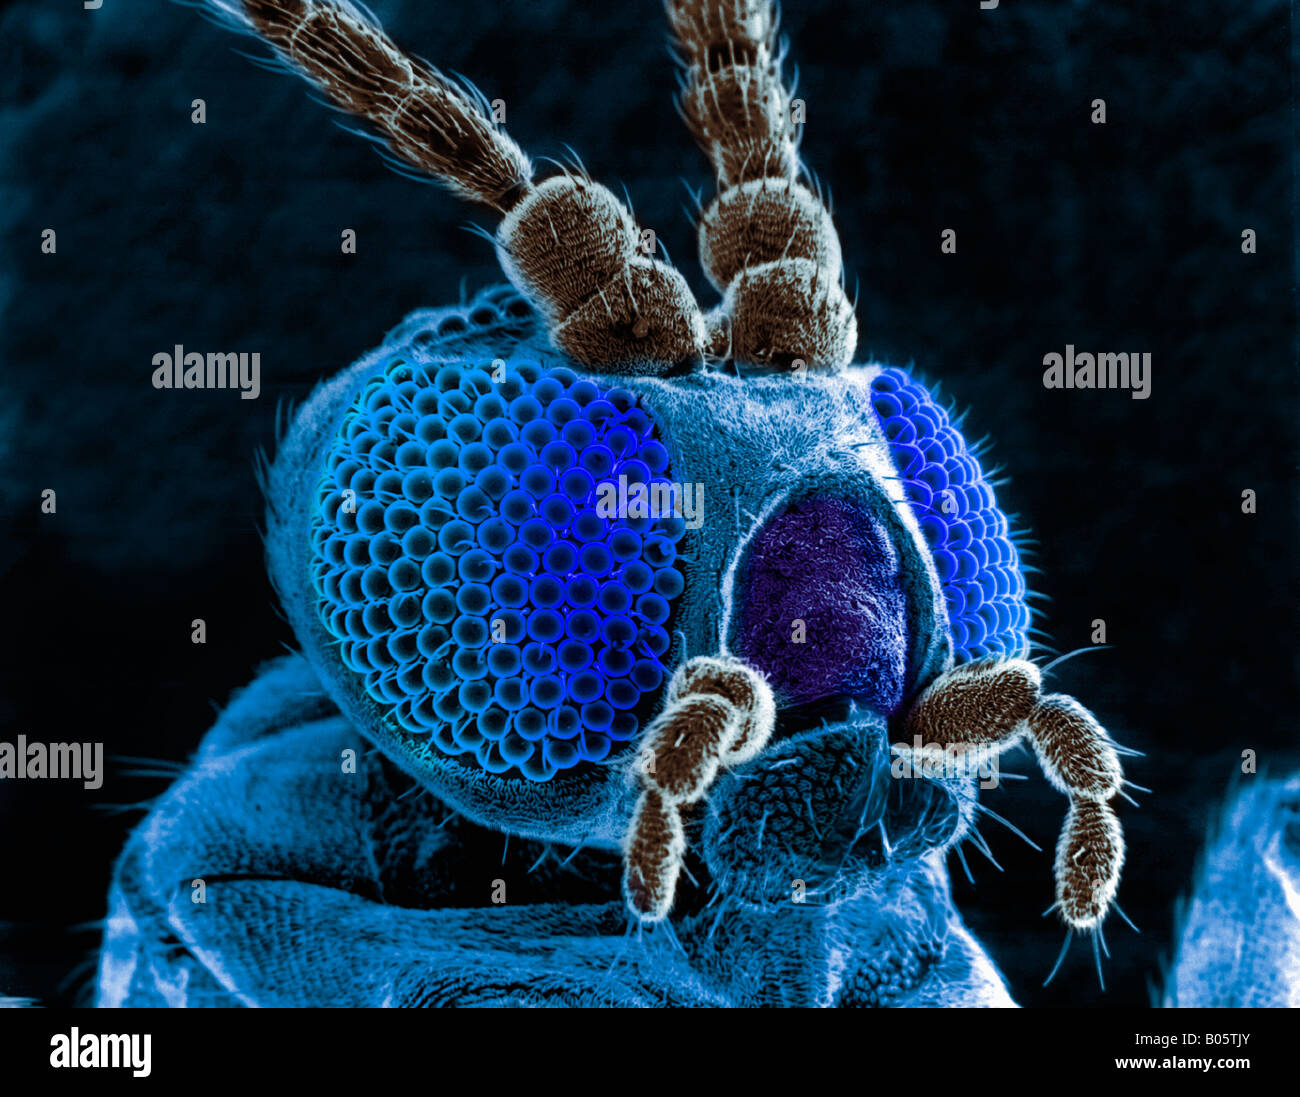 Leiter der Schmetterling gesehen durch ein EM-Mikroskop Stockfotografie -  Alamy